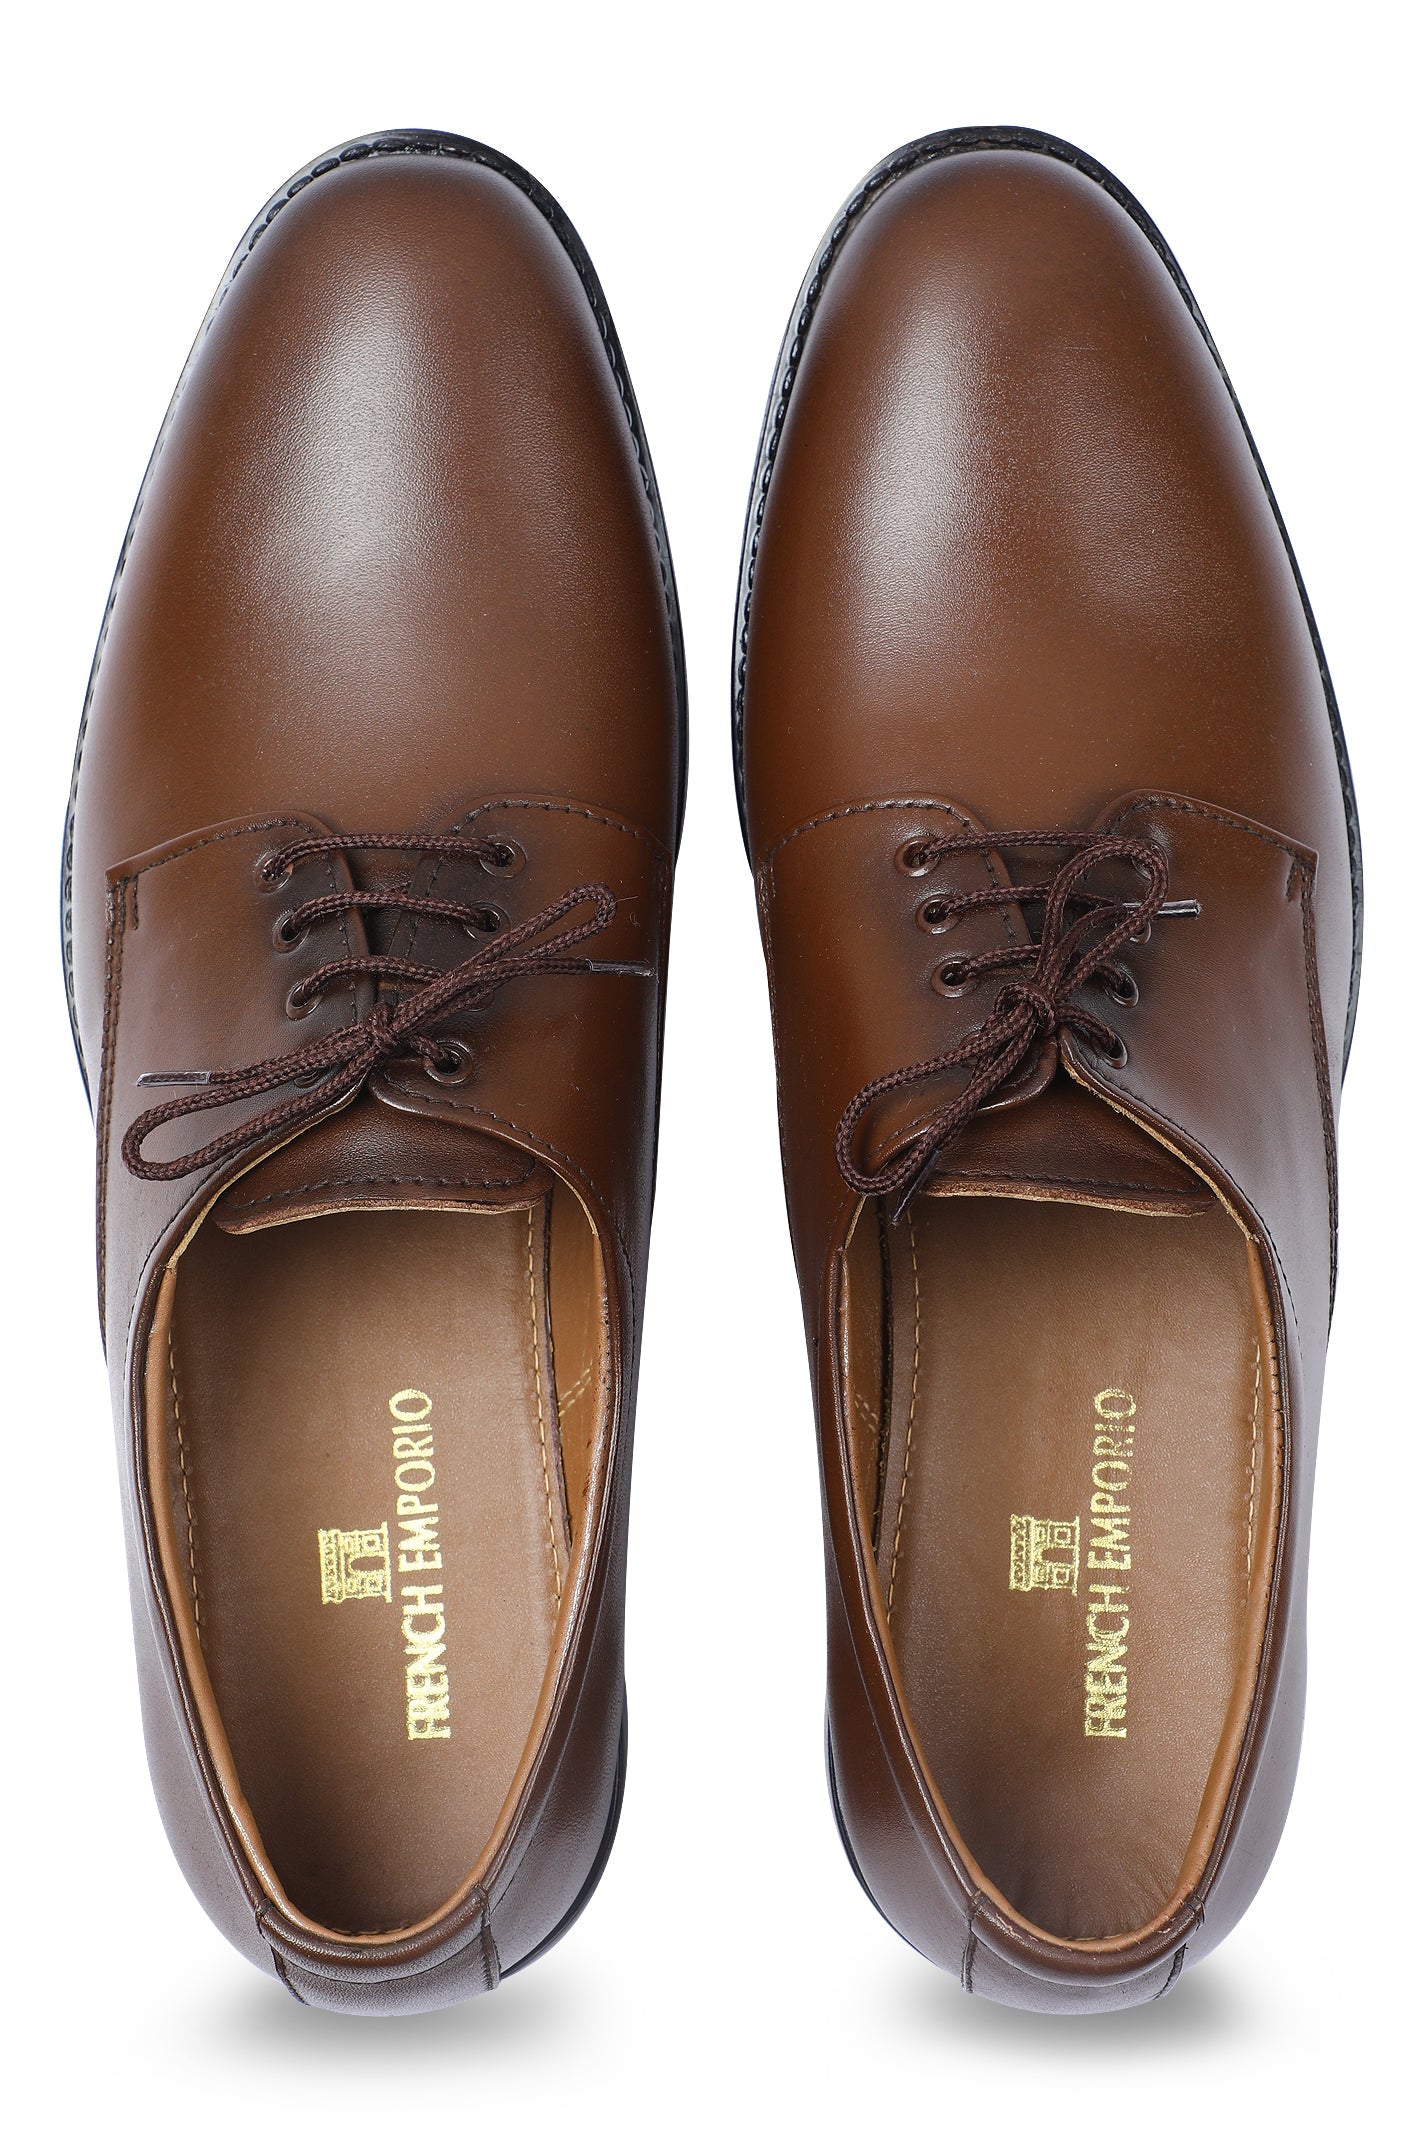 Formal Shoes For Men SKU: SMF-0273-BROWN - Diners